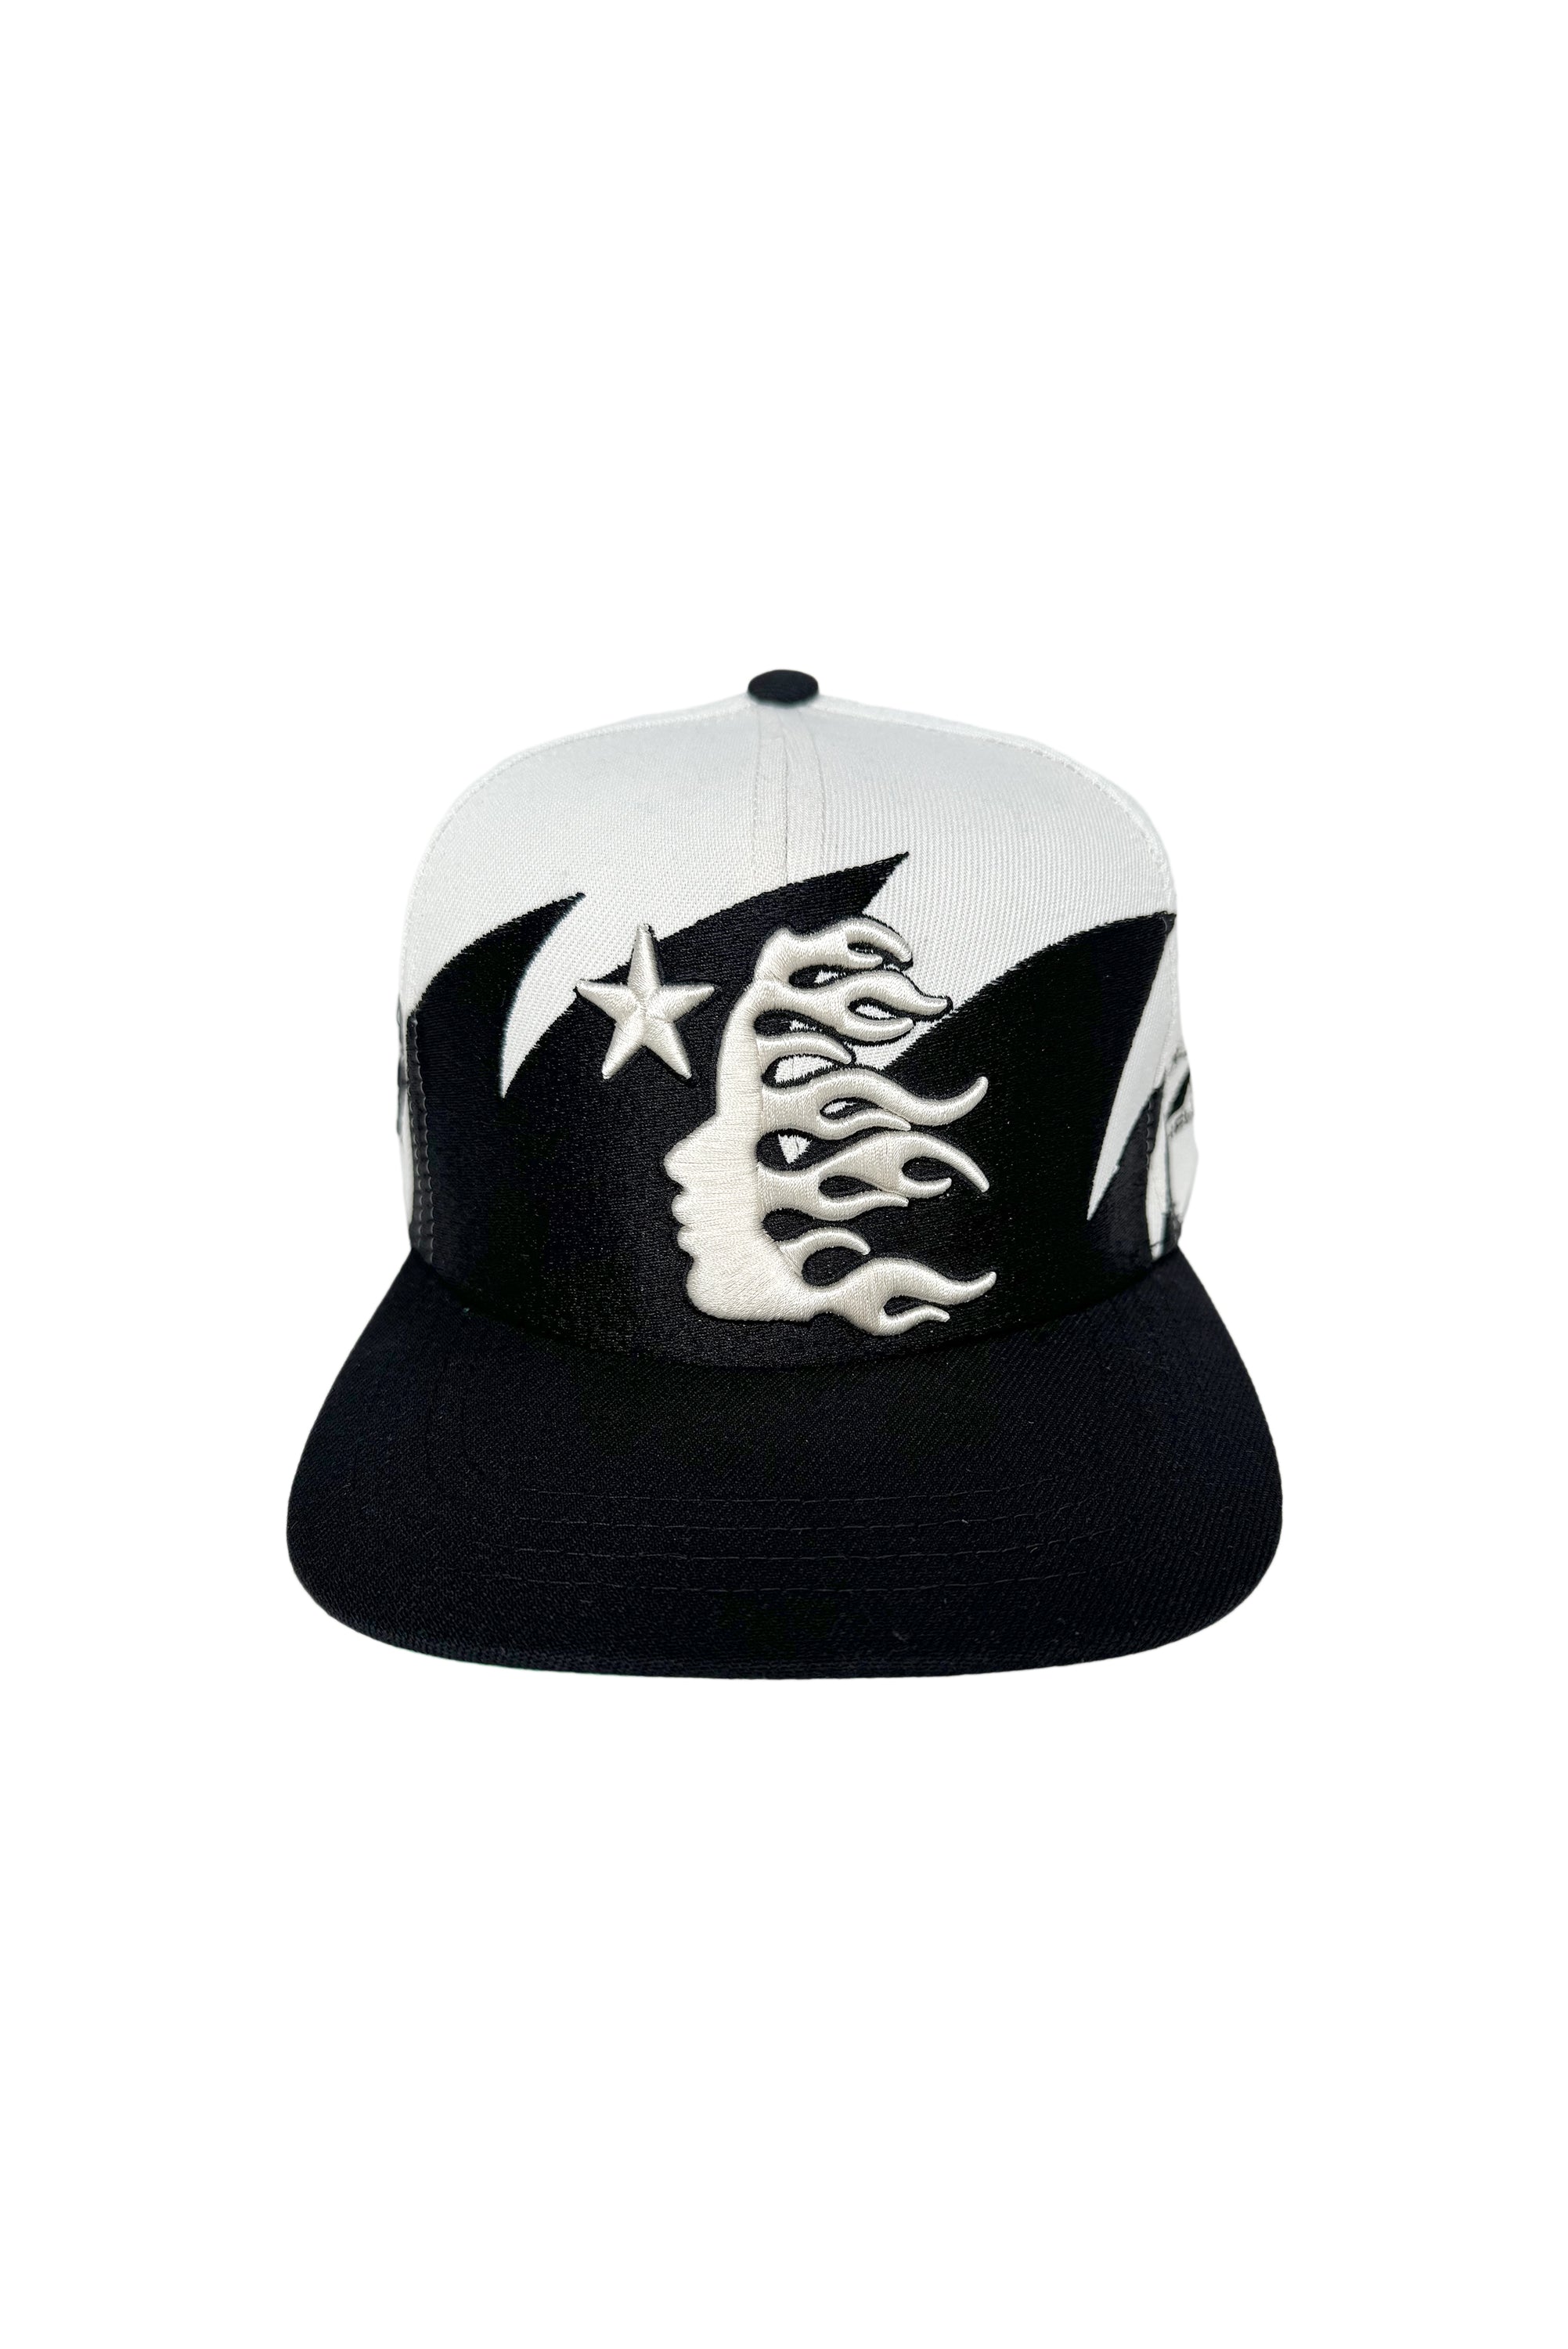 SharkTeeth Snapback Hat